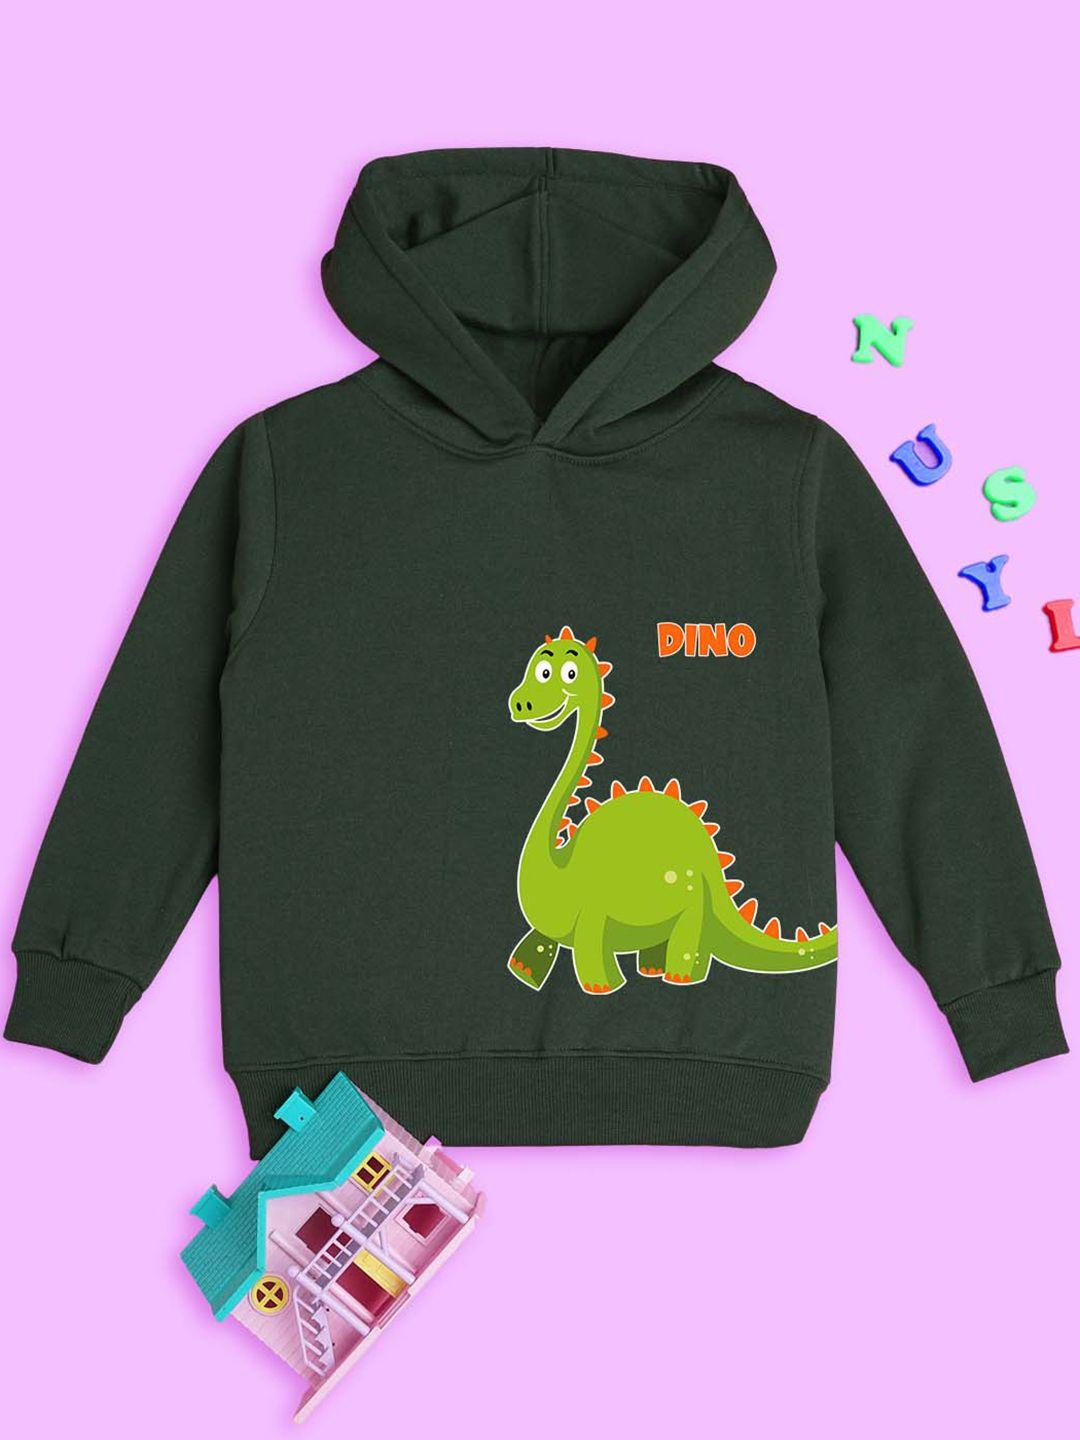 nusyl kids dinosaur printed ribbed hooded sweatshirt